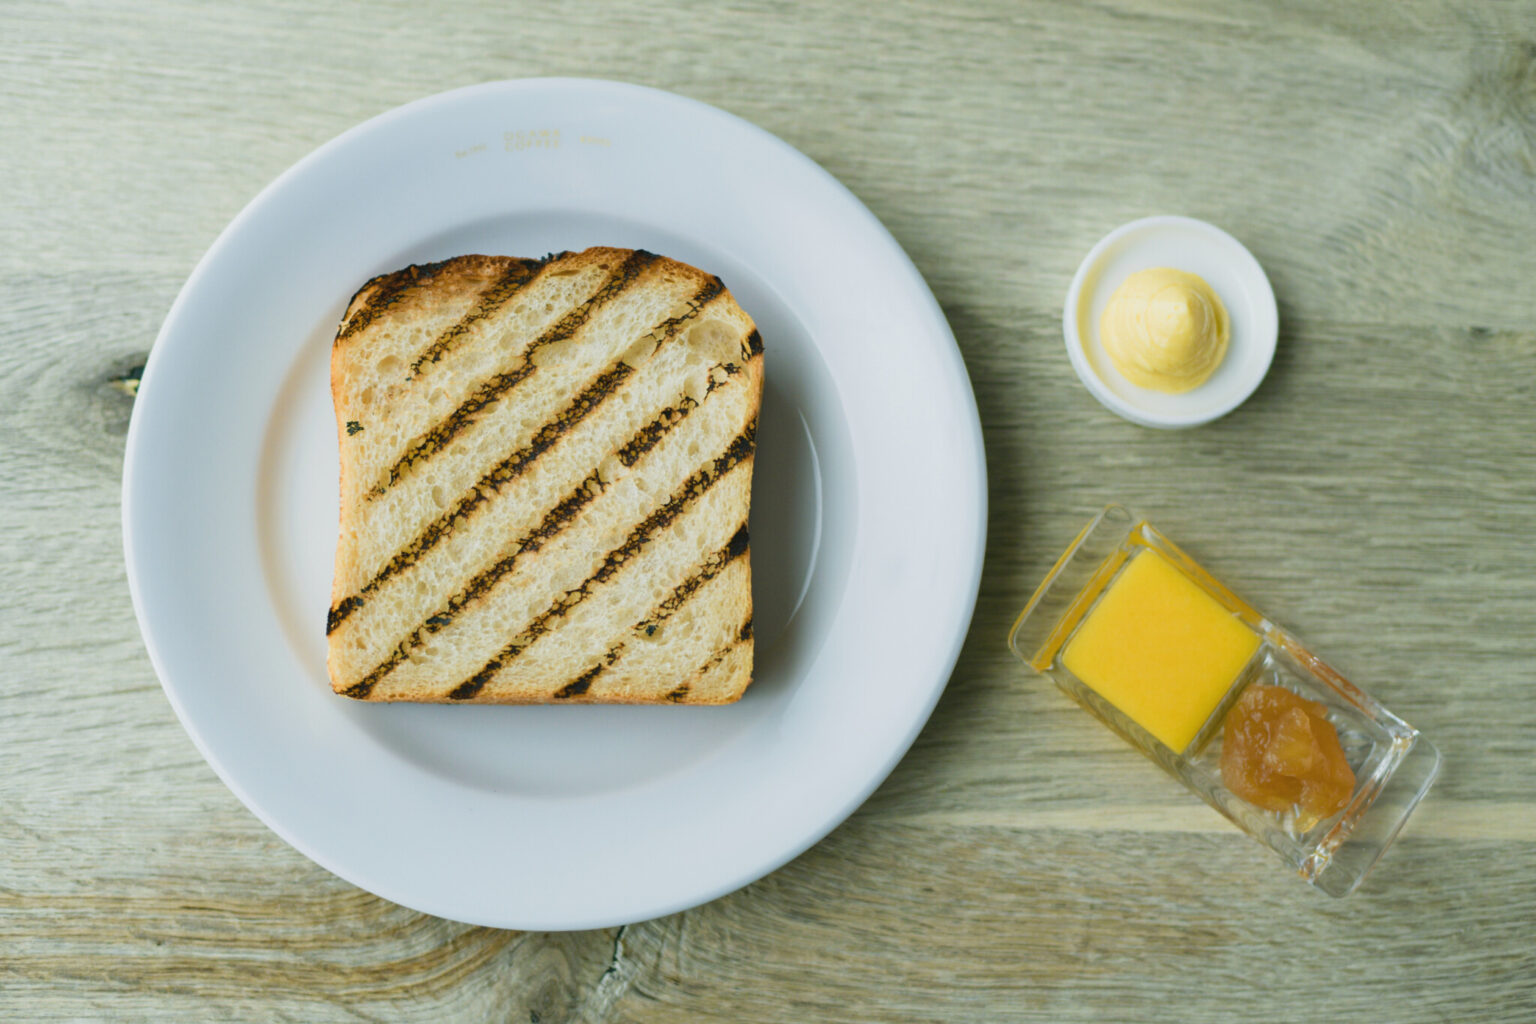 「自家製食パンの炭火焼きトーストセット（ドリンク付）」900円。糀バターと季節のコンフィチュール（写真はレモンカードと林檎と生姜のジャム）と。